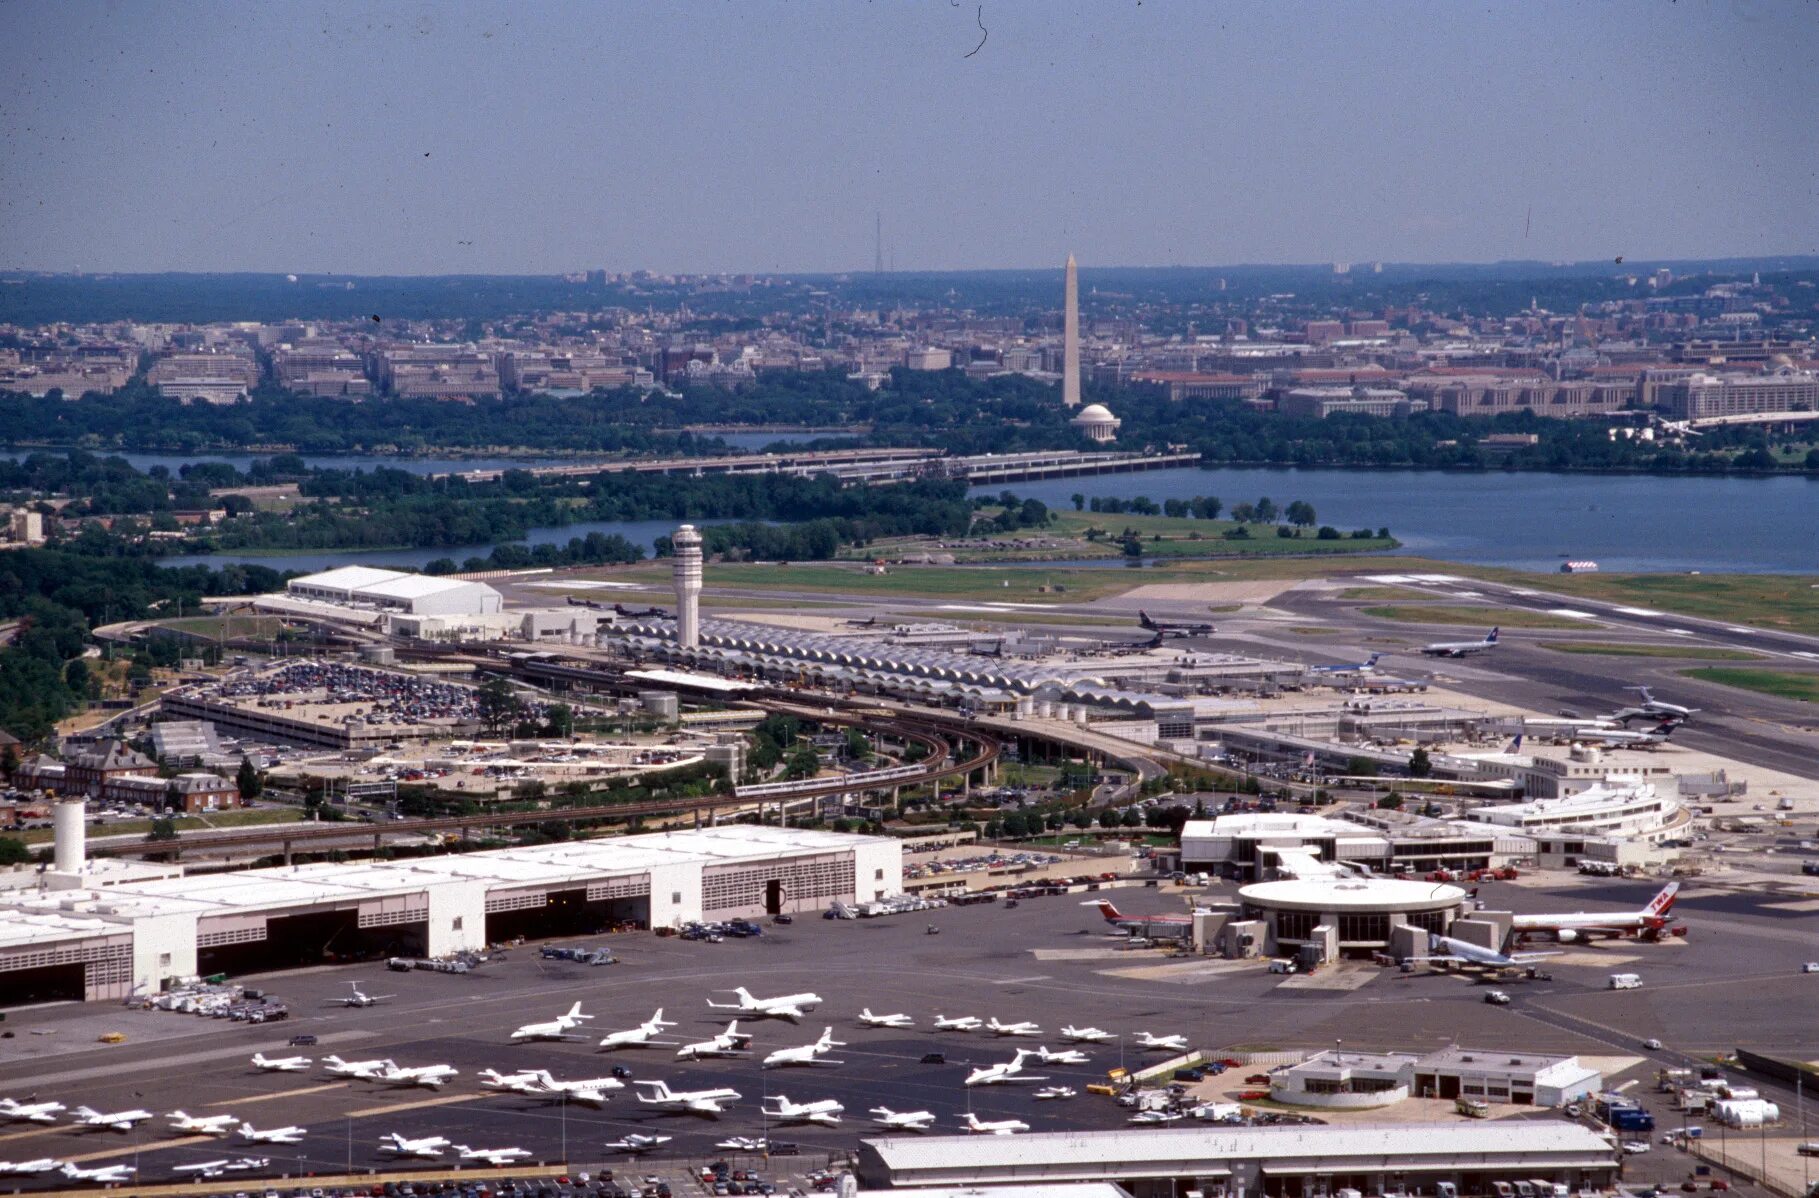 Национальный аэропорт самолеты. Международный аэропорт Вашингтон Даллес. Аэропорт имени Рональда Рейгана. Аэропорт Вашингтона Рейган. Аэропорт Рональд Рейган.